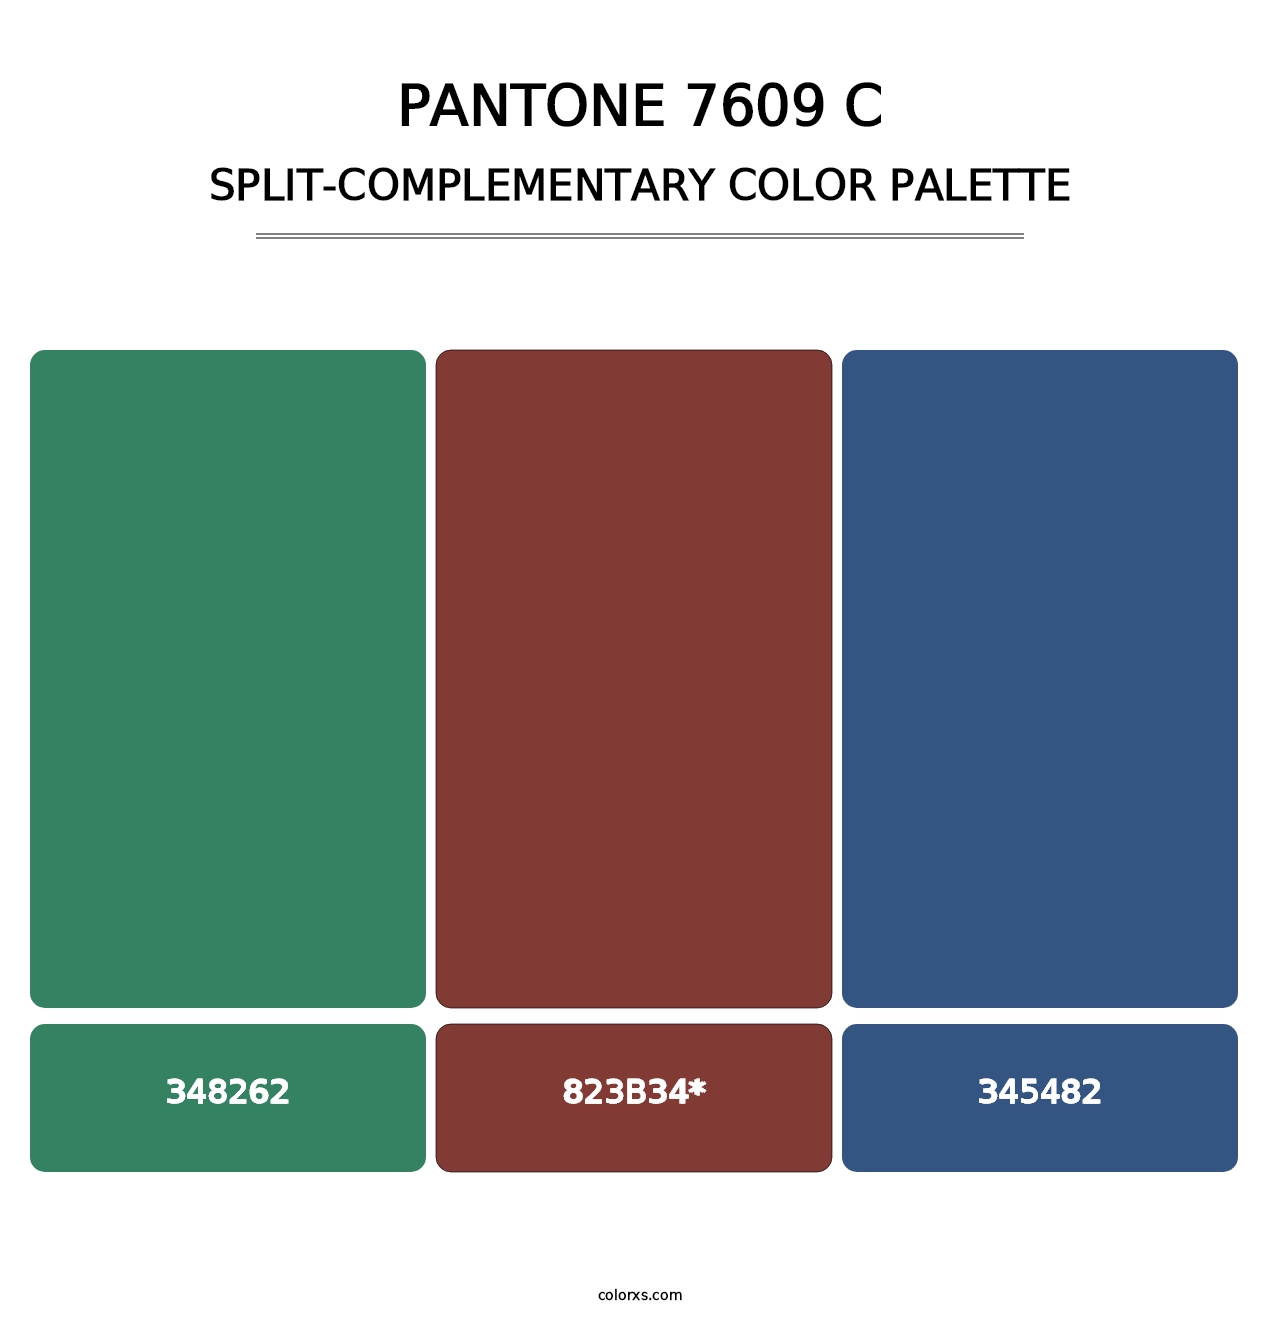 PANTONE 7609 C - Split-Complementary Color Palette